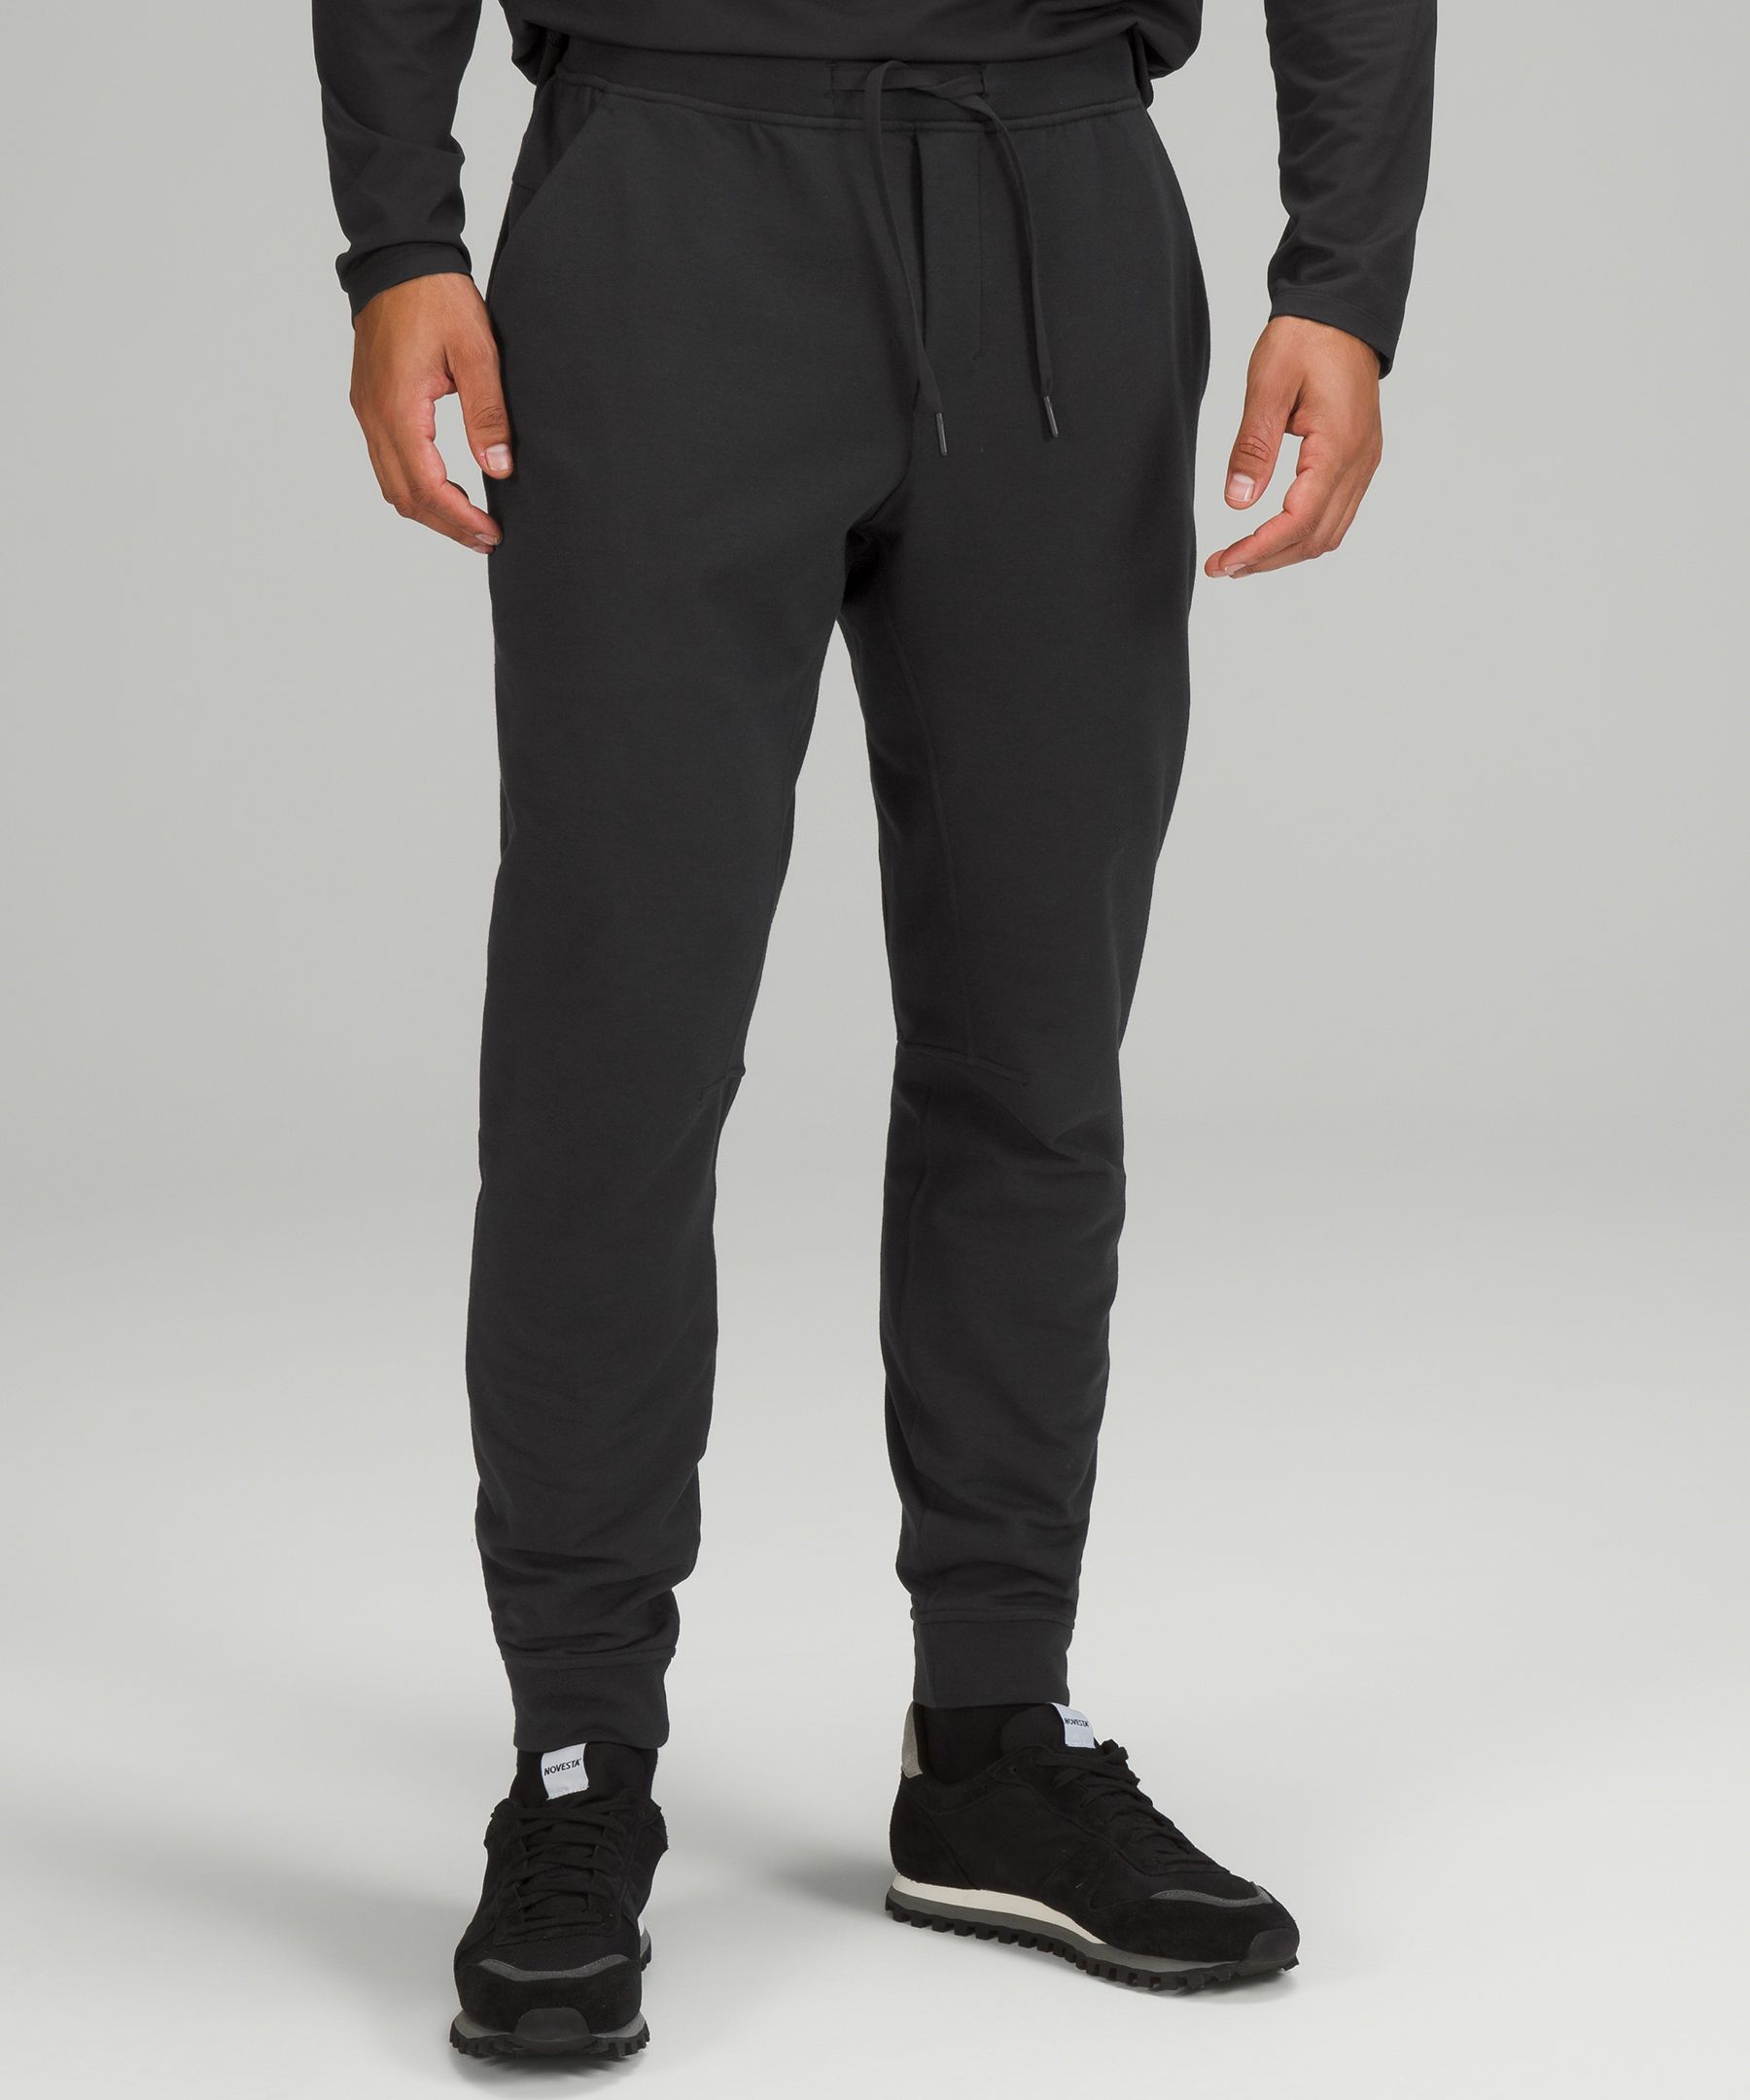 City Sweat Jogger | Men's Pants | lululemon athletica